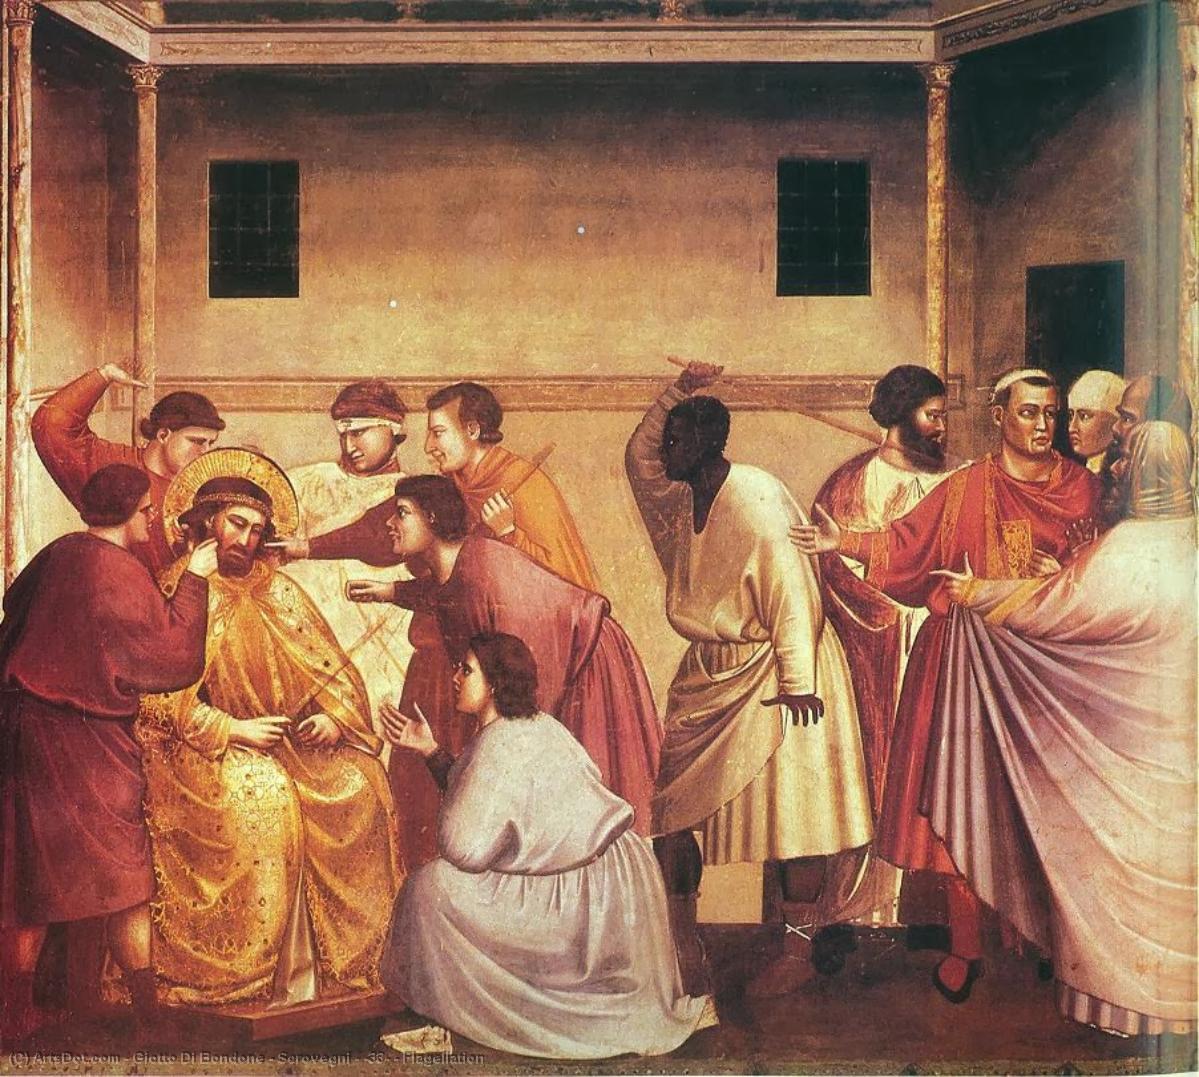 WikiOO.org - Encyclopedia of Fine Arts - Maleri, Artwork Giotto Di Bondone - Scrovegni - [33] - Flagellation